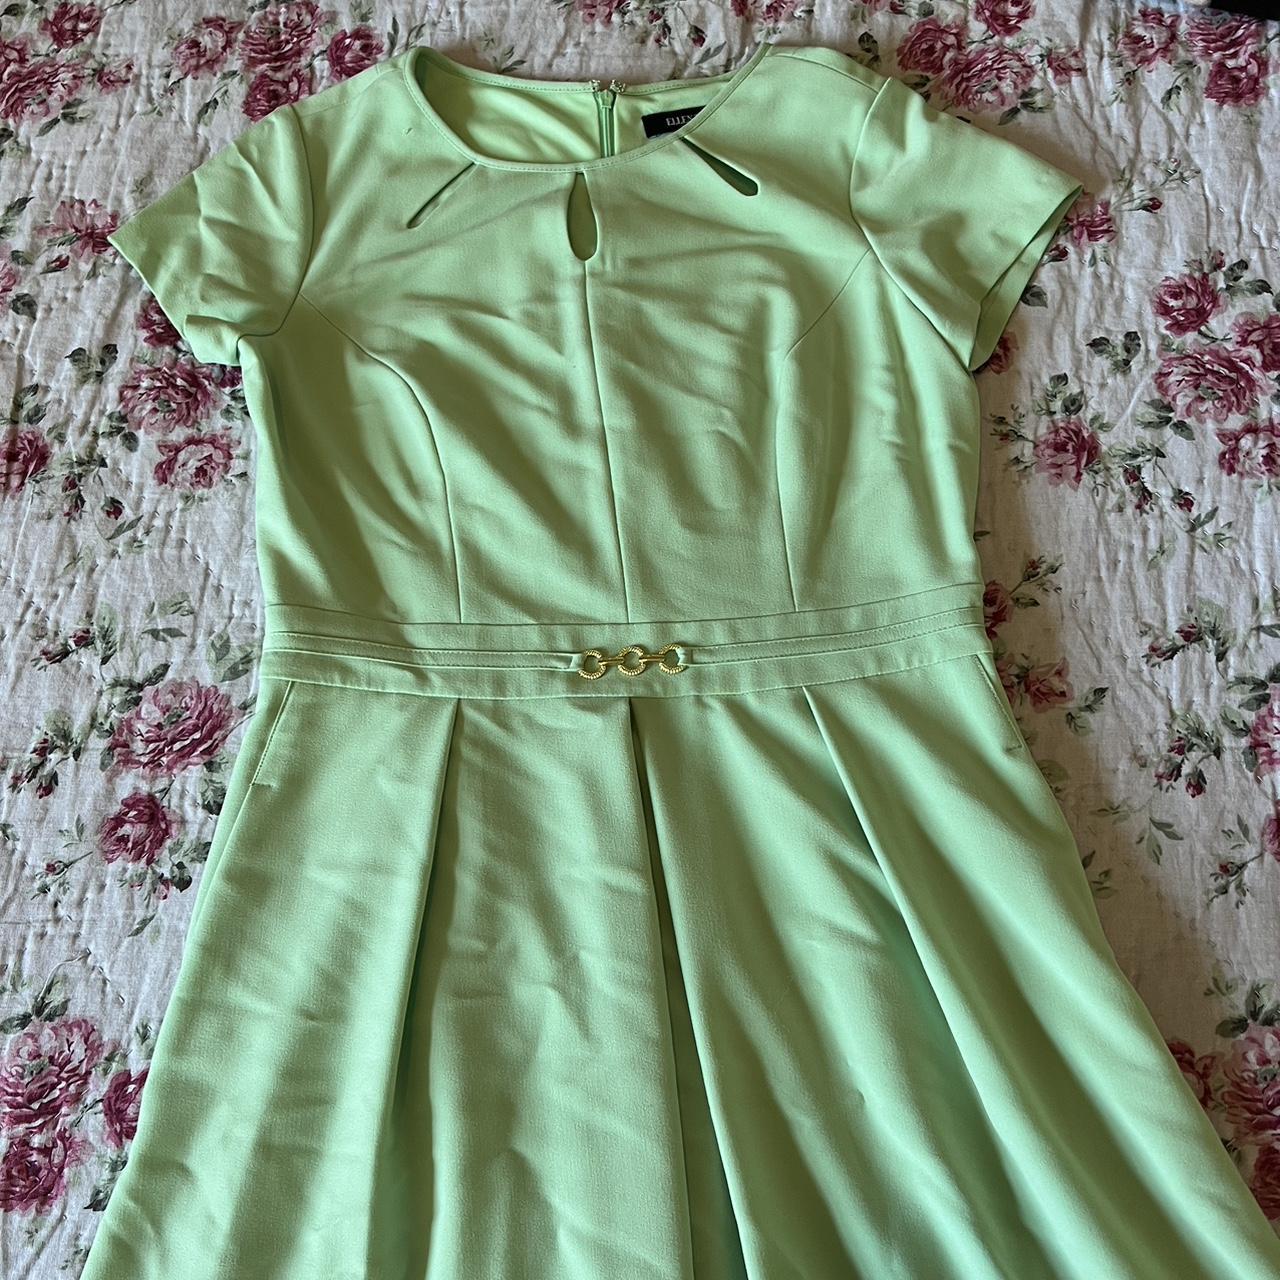 Seafoam green Ellen Tracy Dress Vintage look - Depop